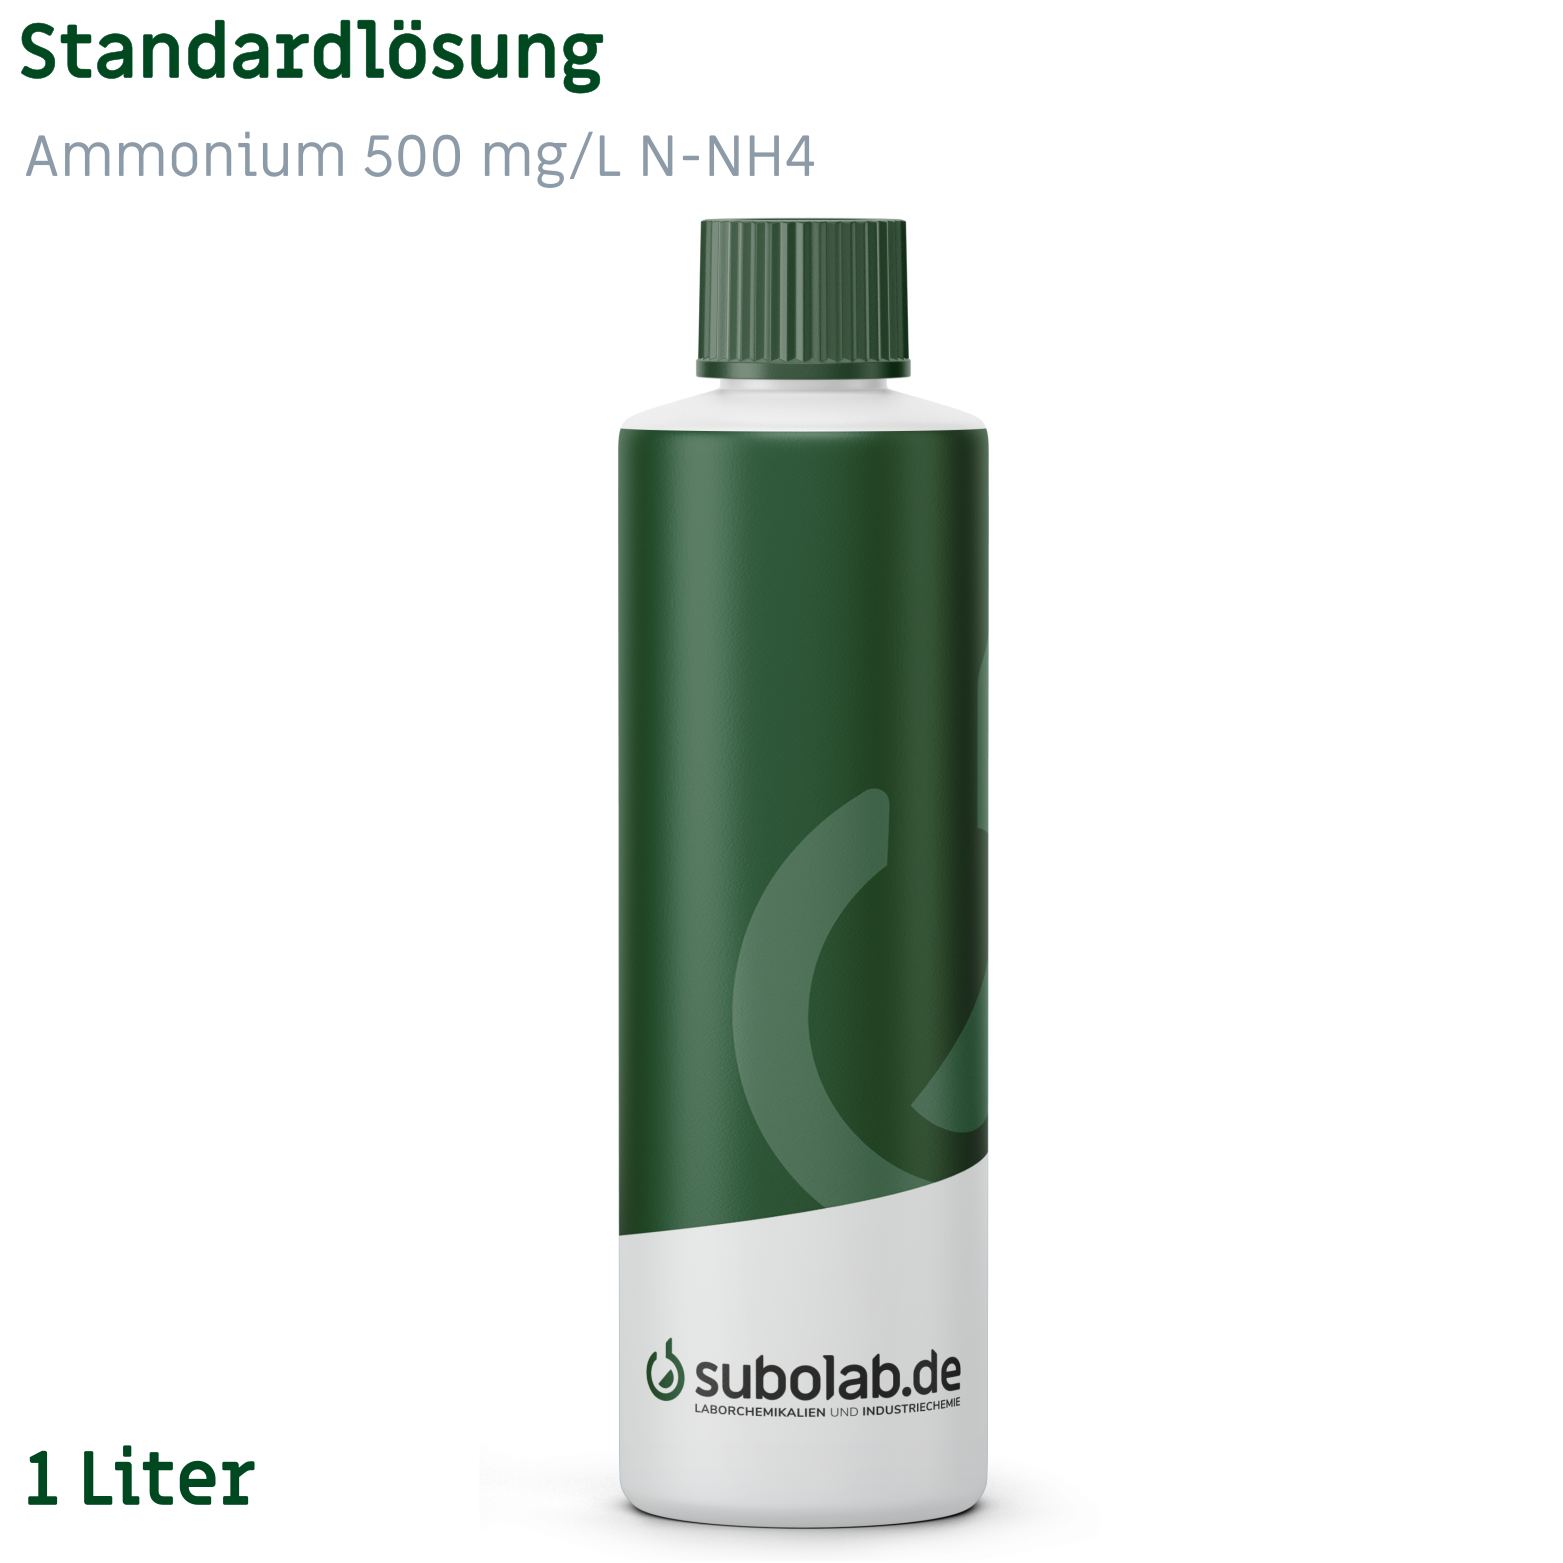 Bild von Standardlösung Ammonium 500 mg/L N-NH4 (1 Liter)